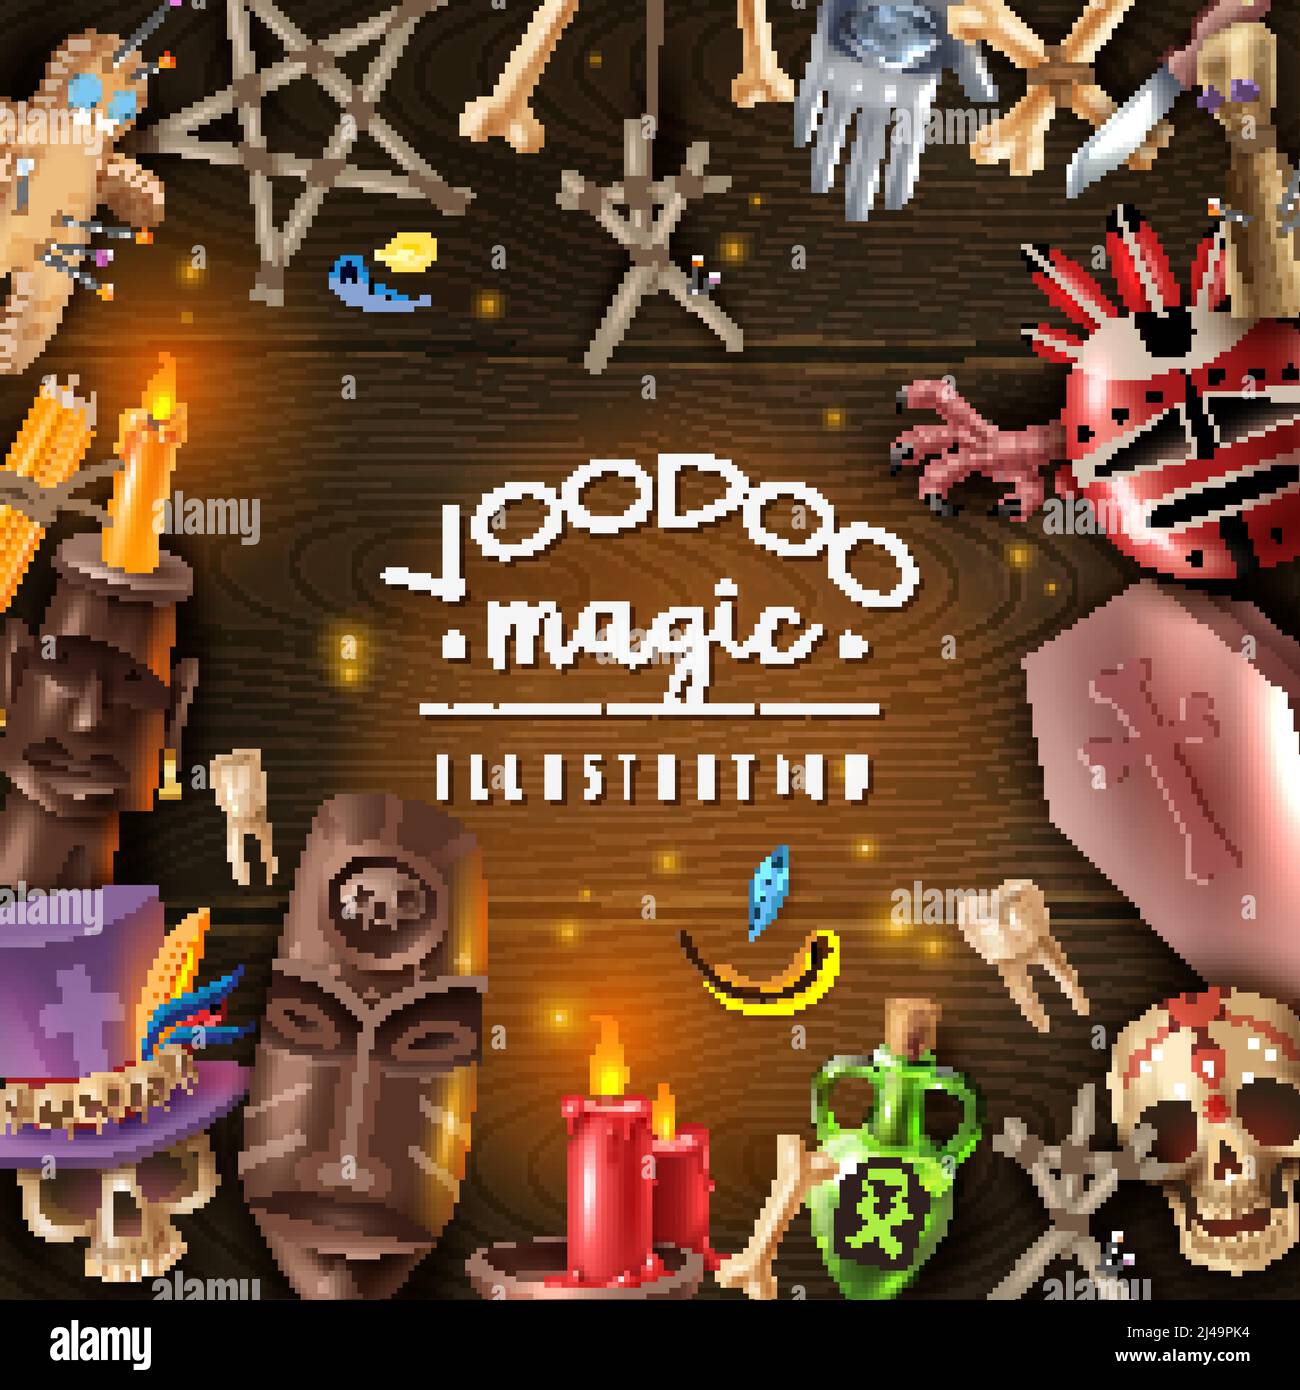 Voodoo Kult Geheimnis magische Objekte Attribute realistische dunkle Holz Hintergrund Rahmen mit Totenkopf Kerzenlicht Puppe Pins Vektor-Illustration Stock Vektor